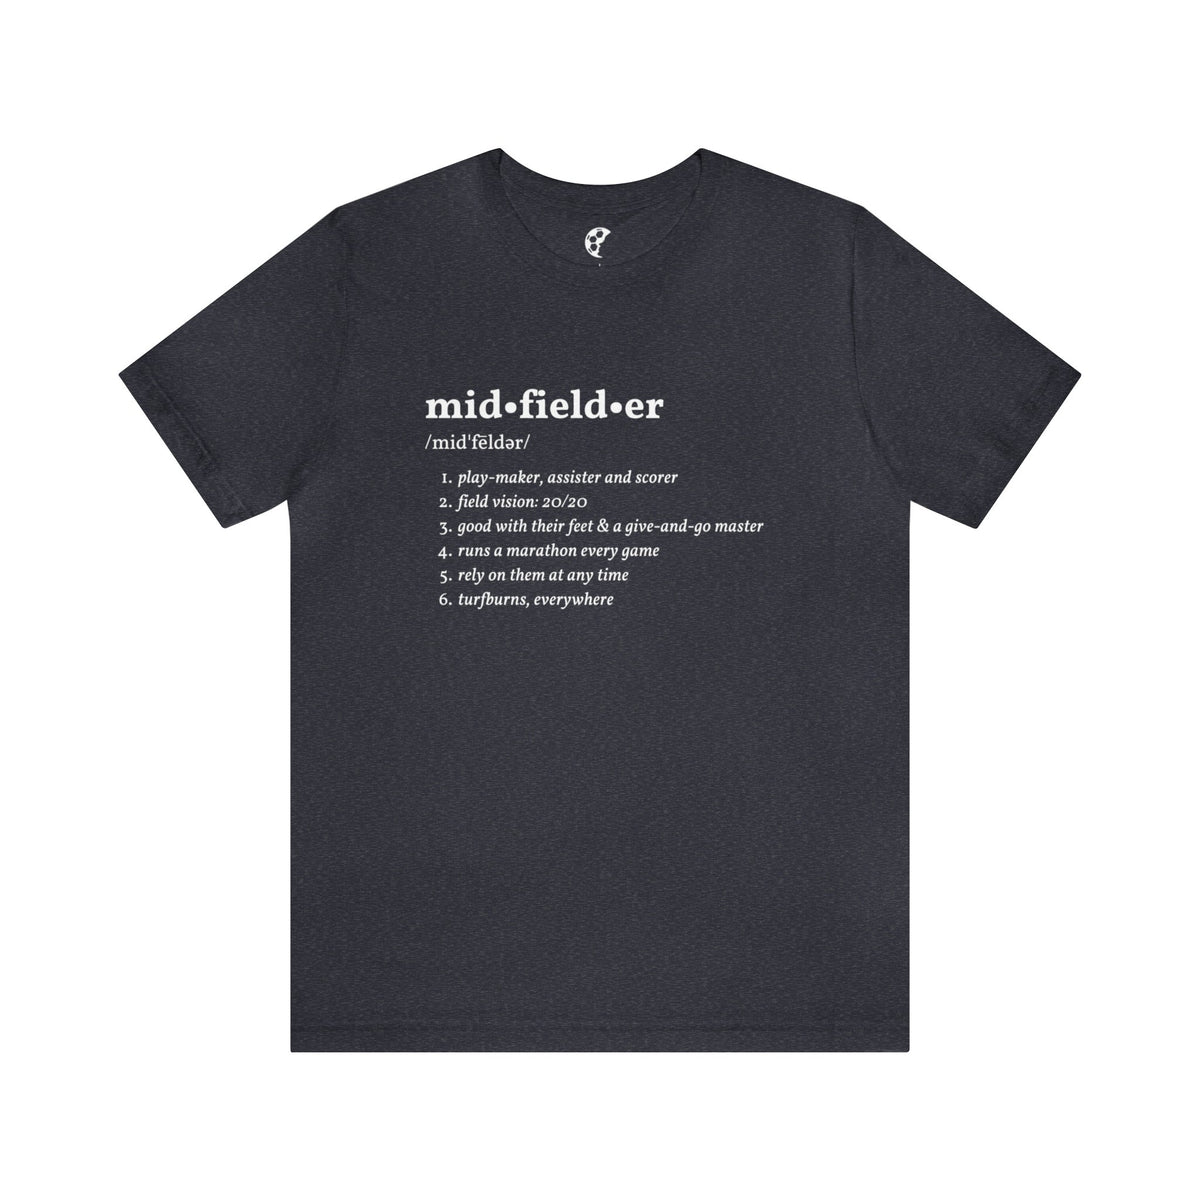 Midfielder Definition Adult T-Shirt